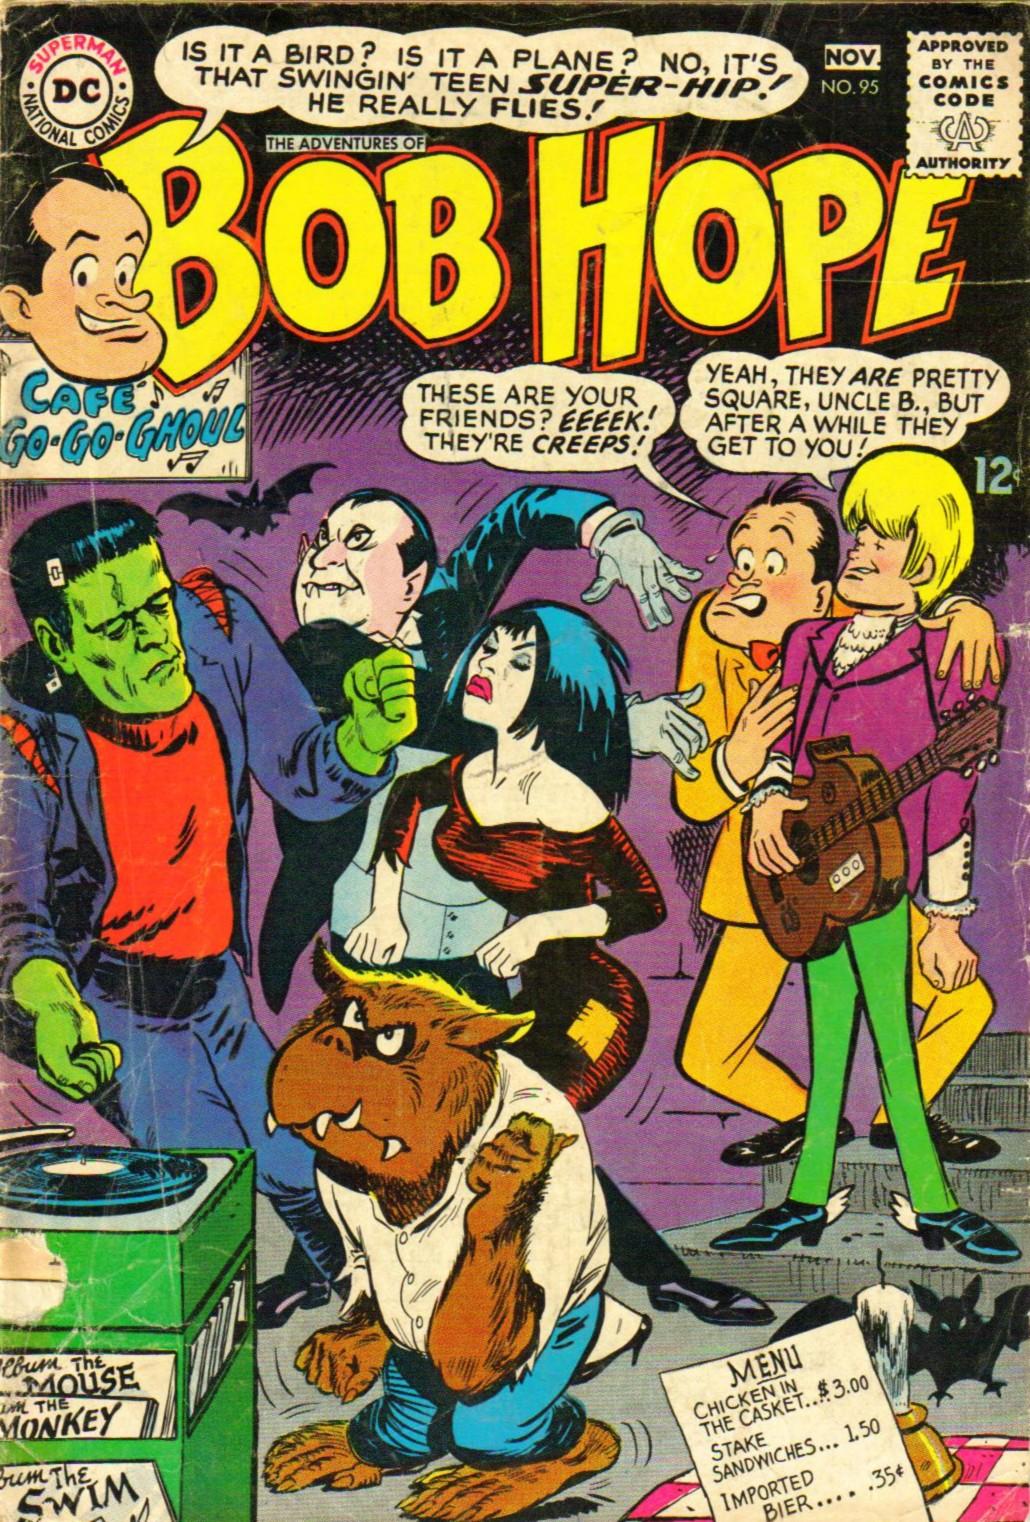 Adventures of Bob Hope Vol. 1 #95